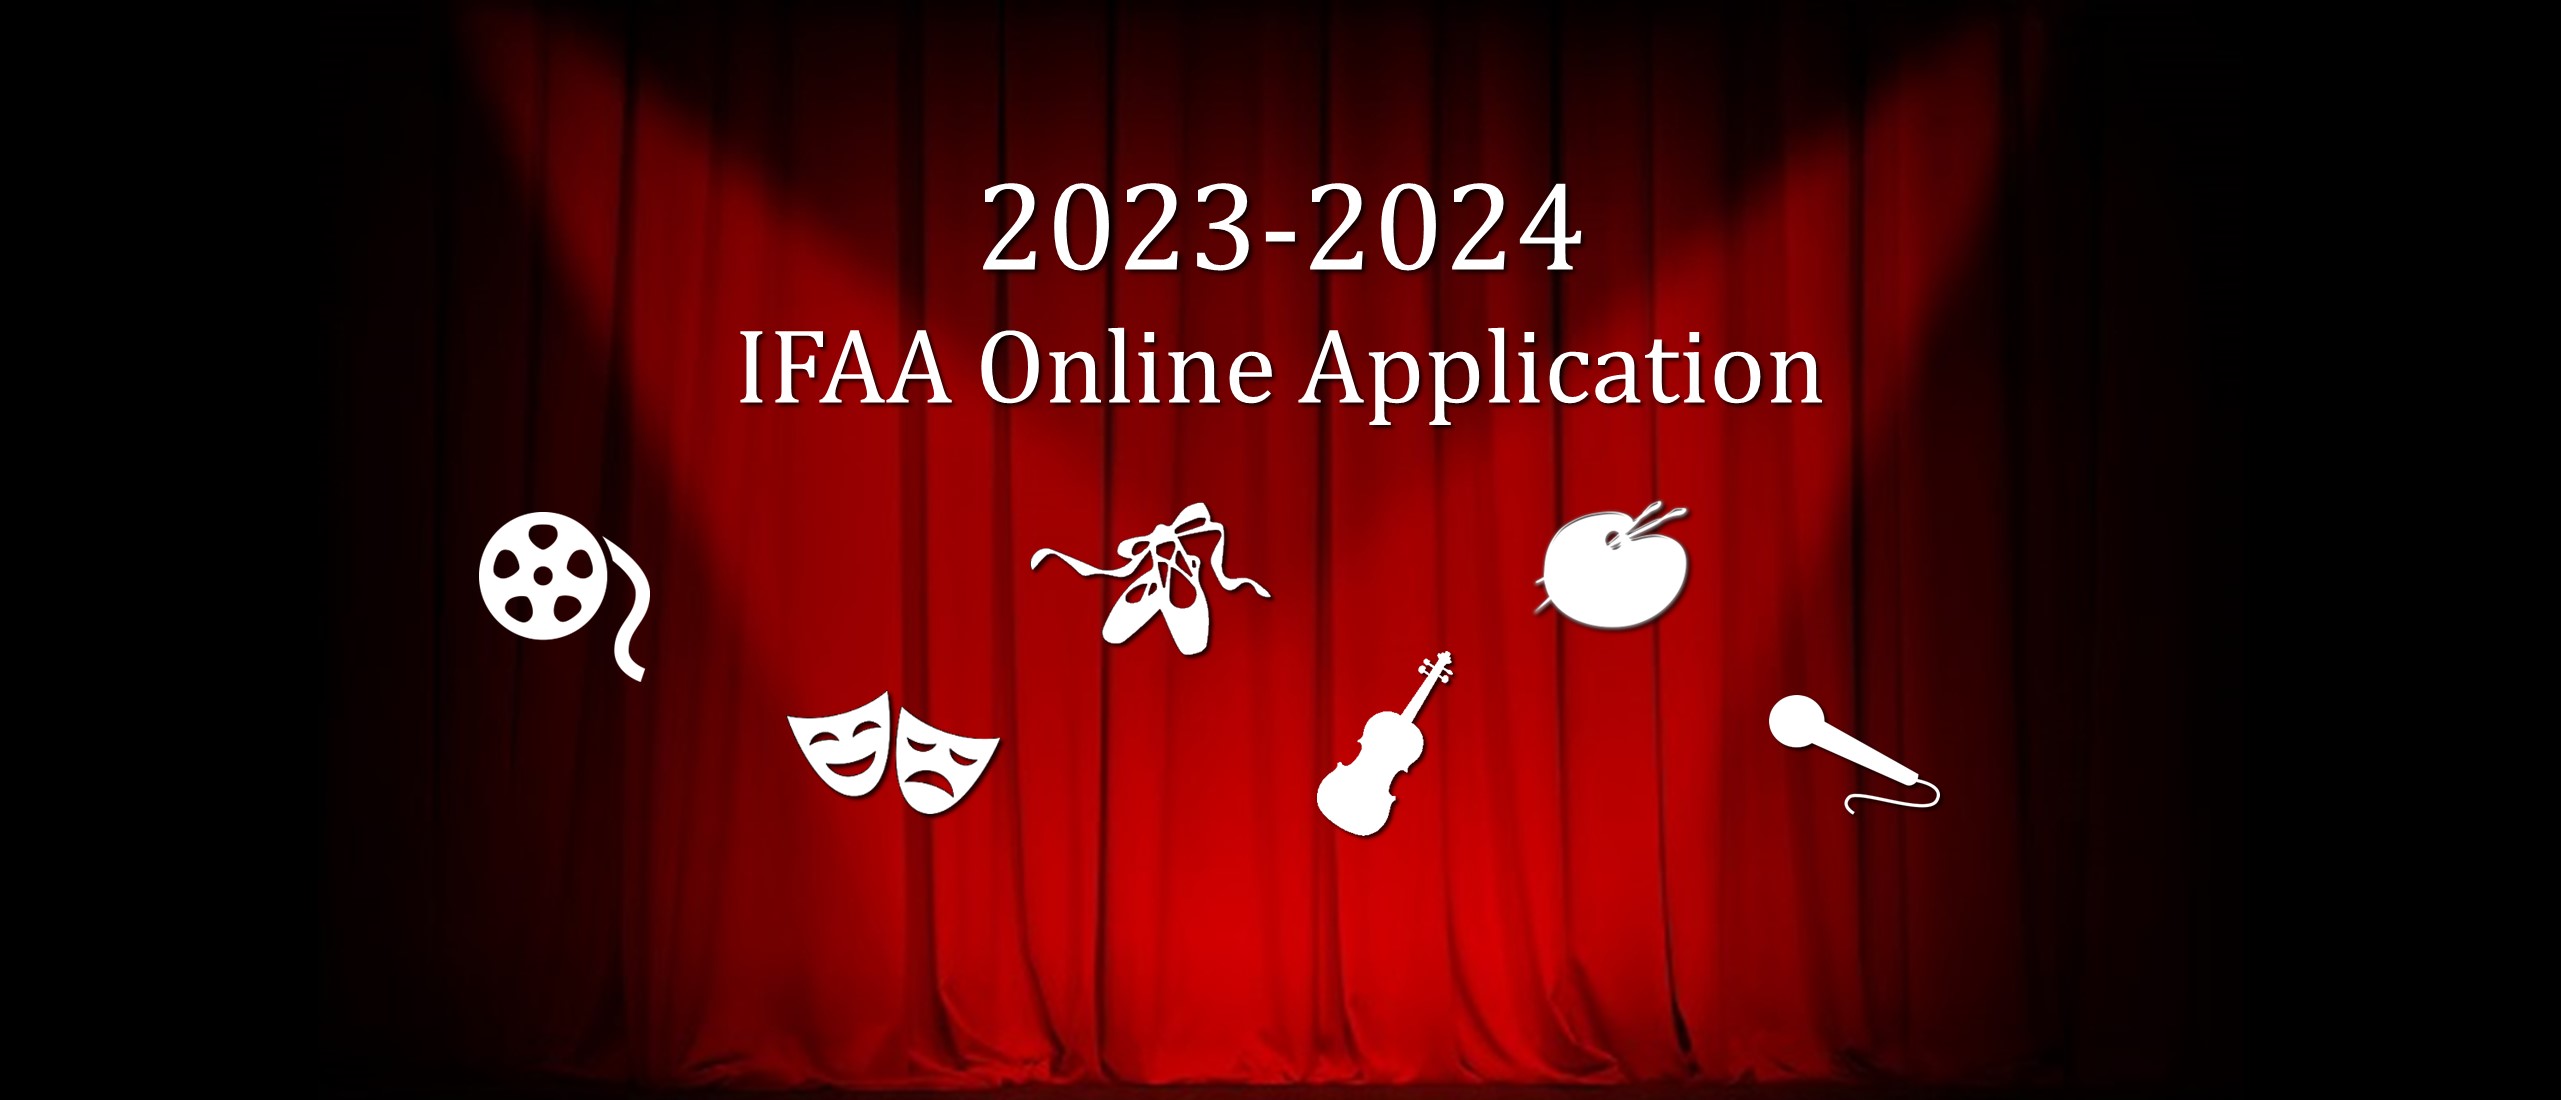 2023-2024 IFAA Online Application (art major graphics)